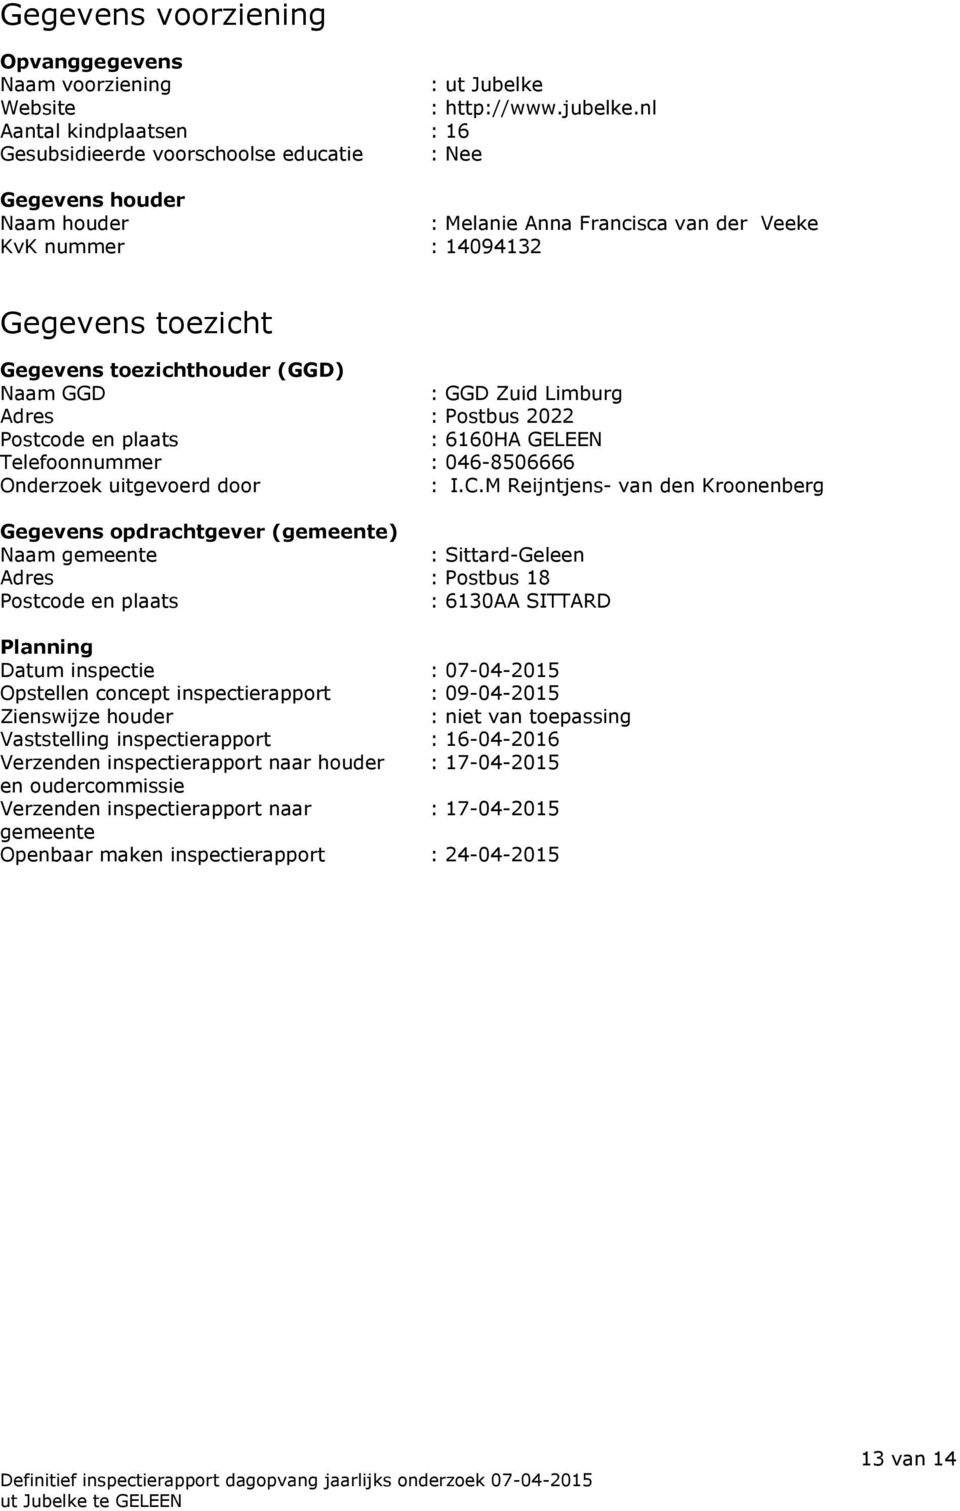 toezichthouder (GGD) Naam GGD : GGD Zuid Limburg Adres : Postbus 2022 Postcode en plaats : 6160HA GELEEN Telefoonnummer : 046-8506666 Onderzoek uitgevoerd door : I.C.